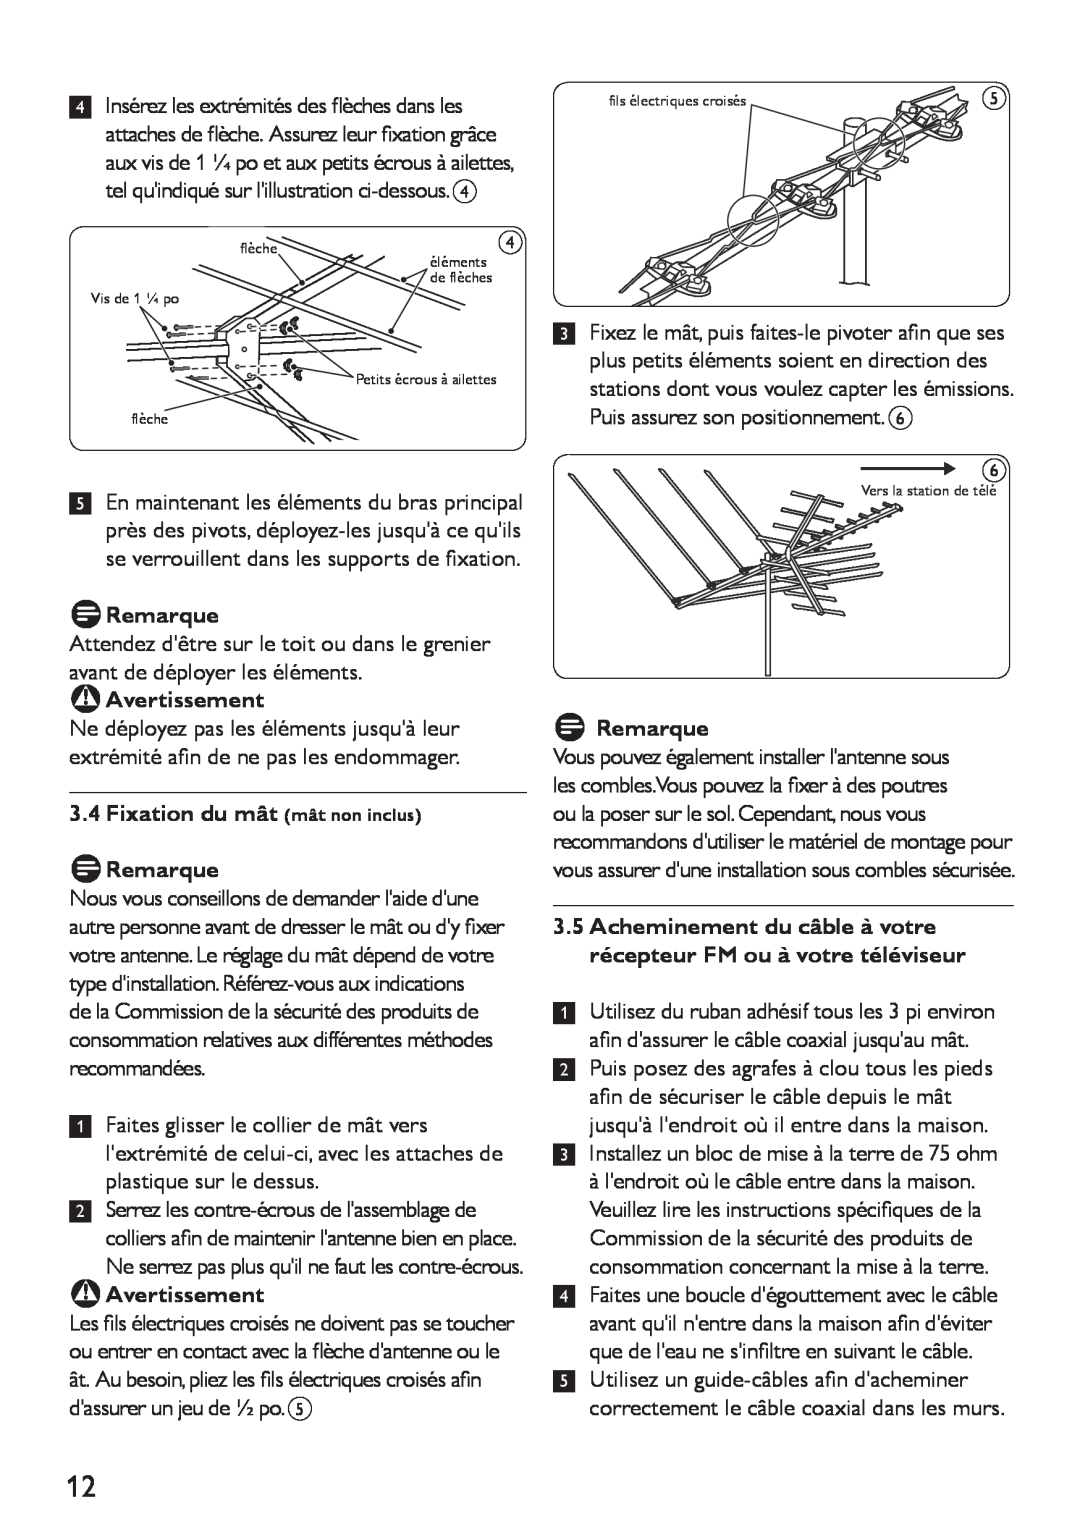 Philips SDV4400/27 manual 3.4Fixation du mât mât non inclus DRemarque, BAvertissement 